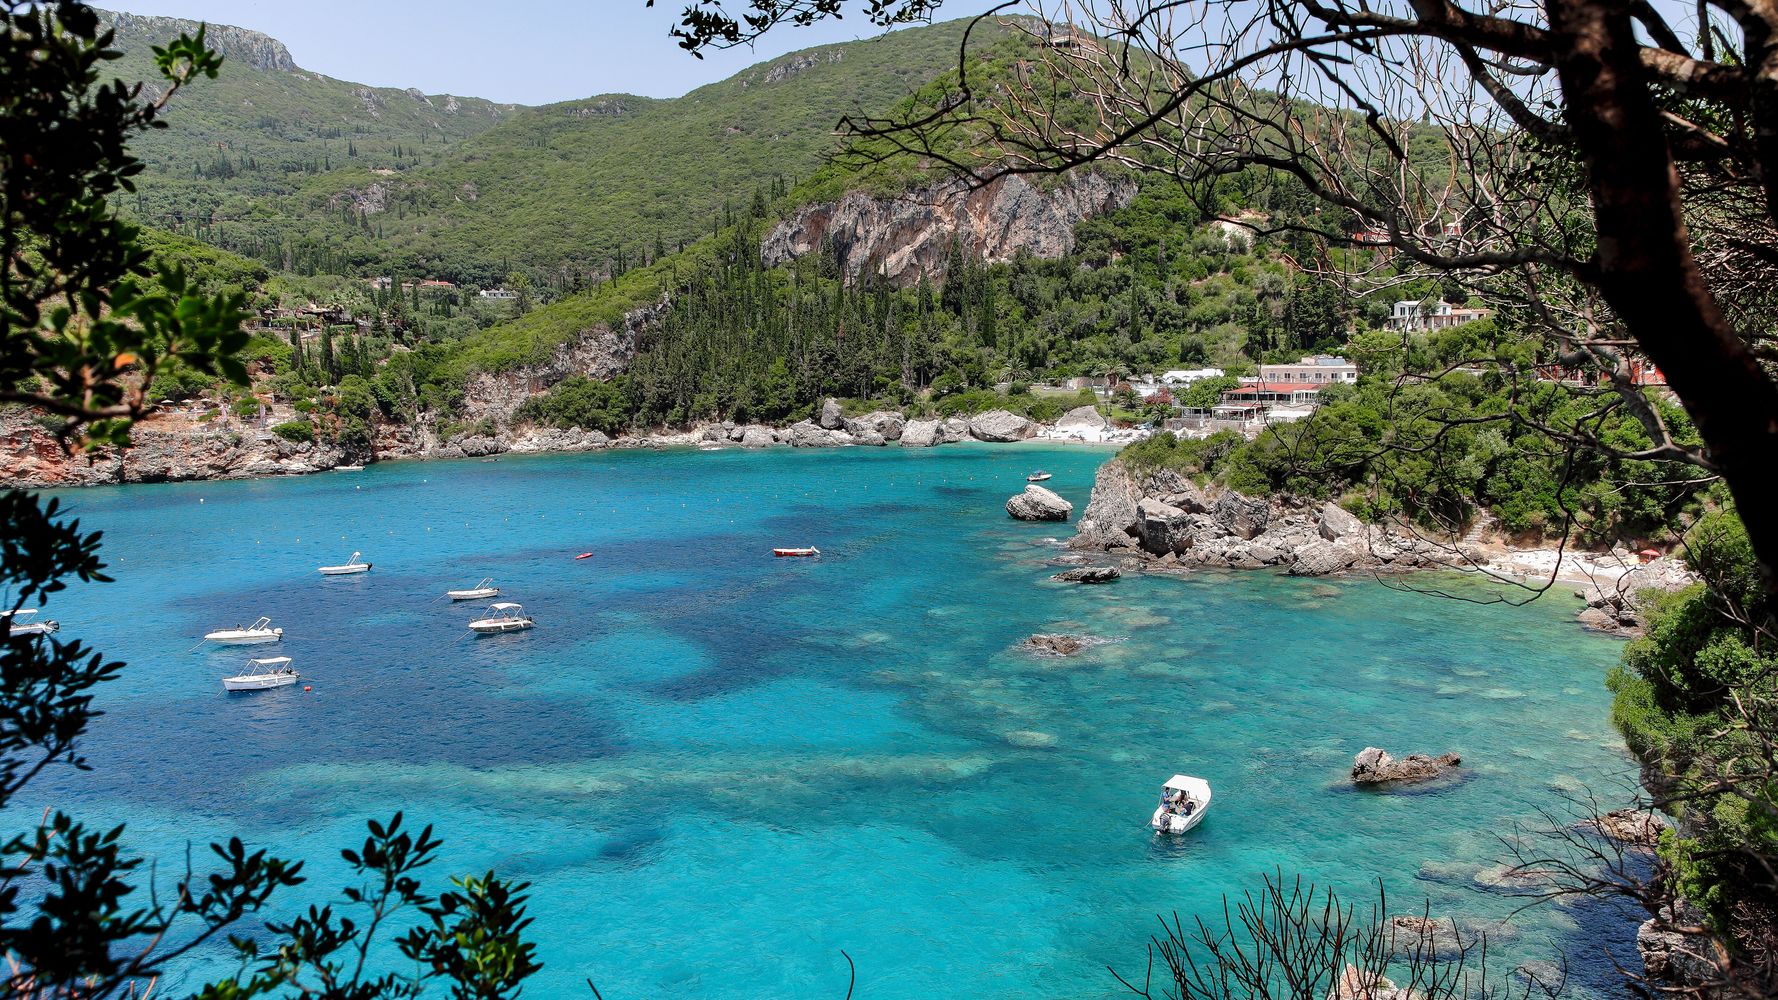 Κέρκυρα: Παραλία Ροβινιά, μία υδάτινη «γωνιά του παραδείσου» | HuffPost Greece LIFE